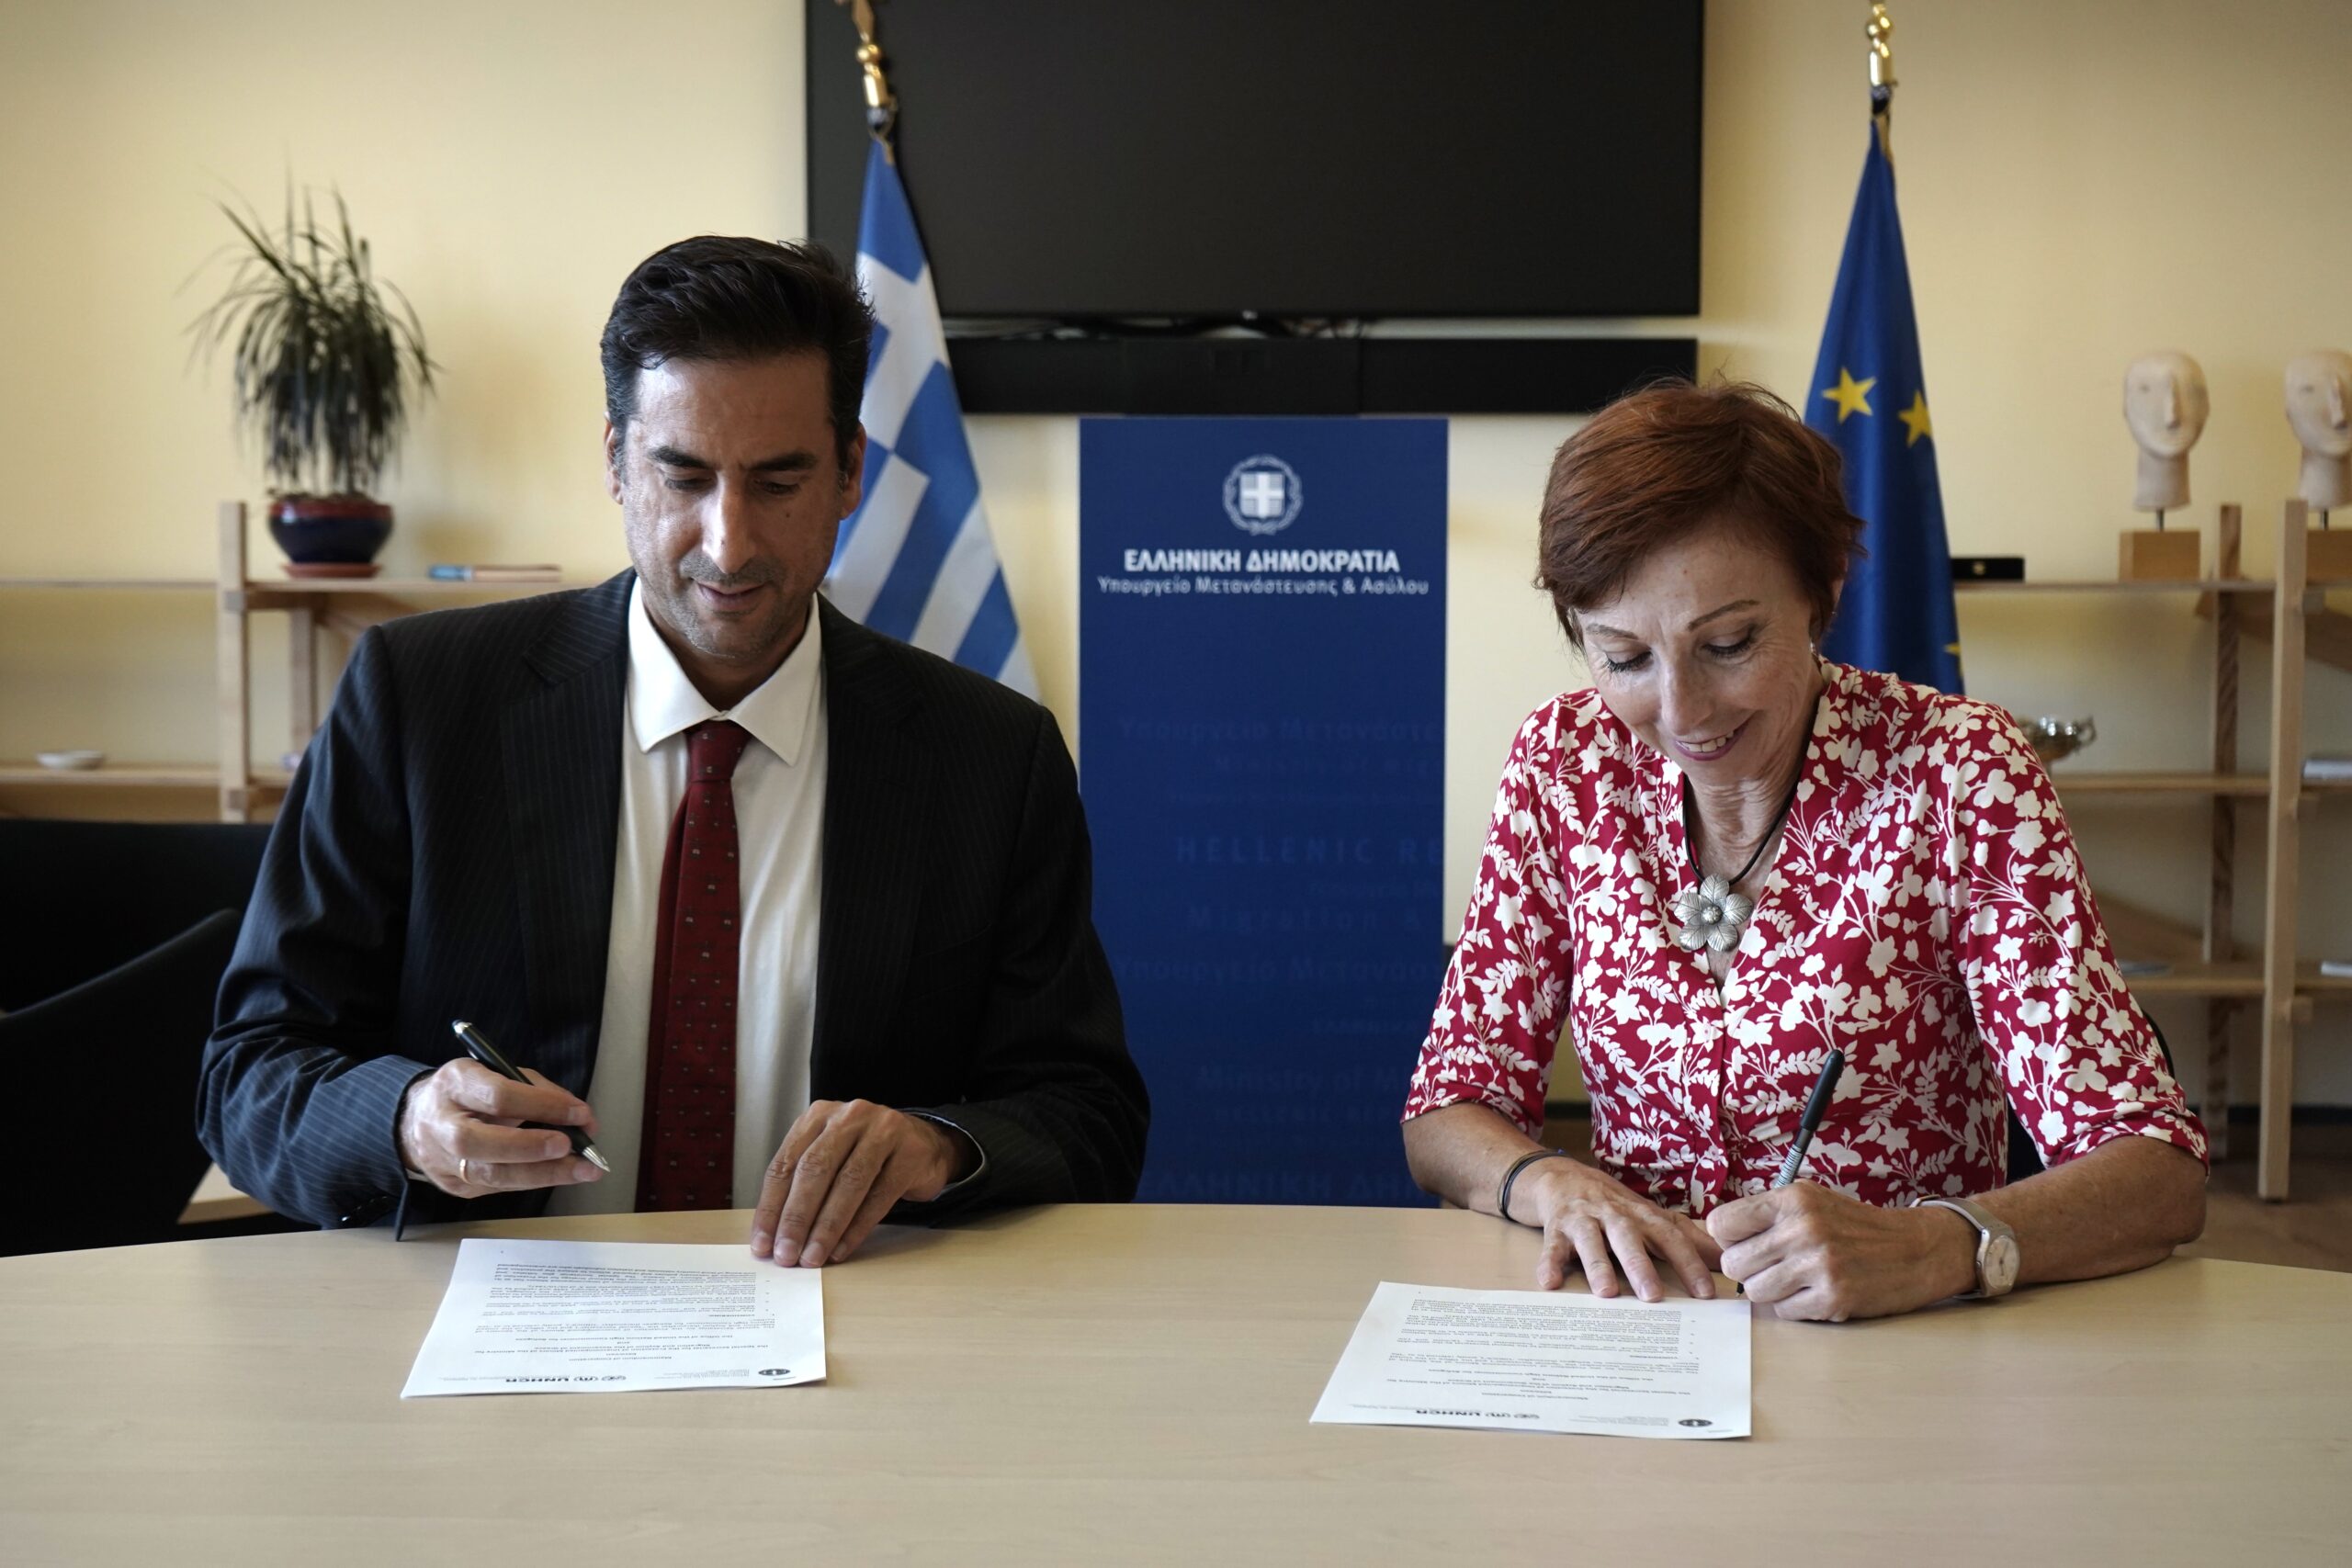 Η Ειδική Γραμματεία Προστασίας Ασυνόδευτων Ανηλίκων και η  Ύπατη Αρμοστεία υπογράφουν συμφωνία για την ενίσχυση της προστασίας των παιδιών προσφύγων που βρίσκονται μόνα τους στην Ελλάδα